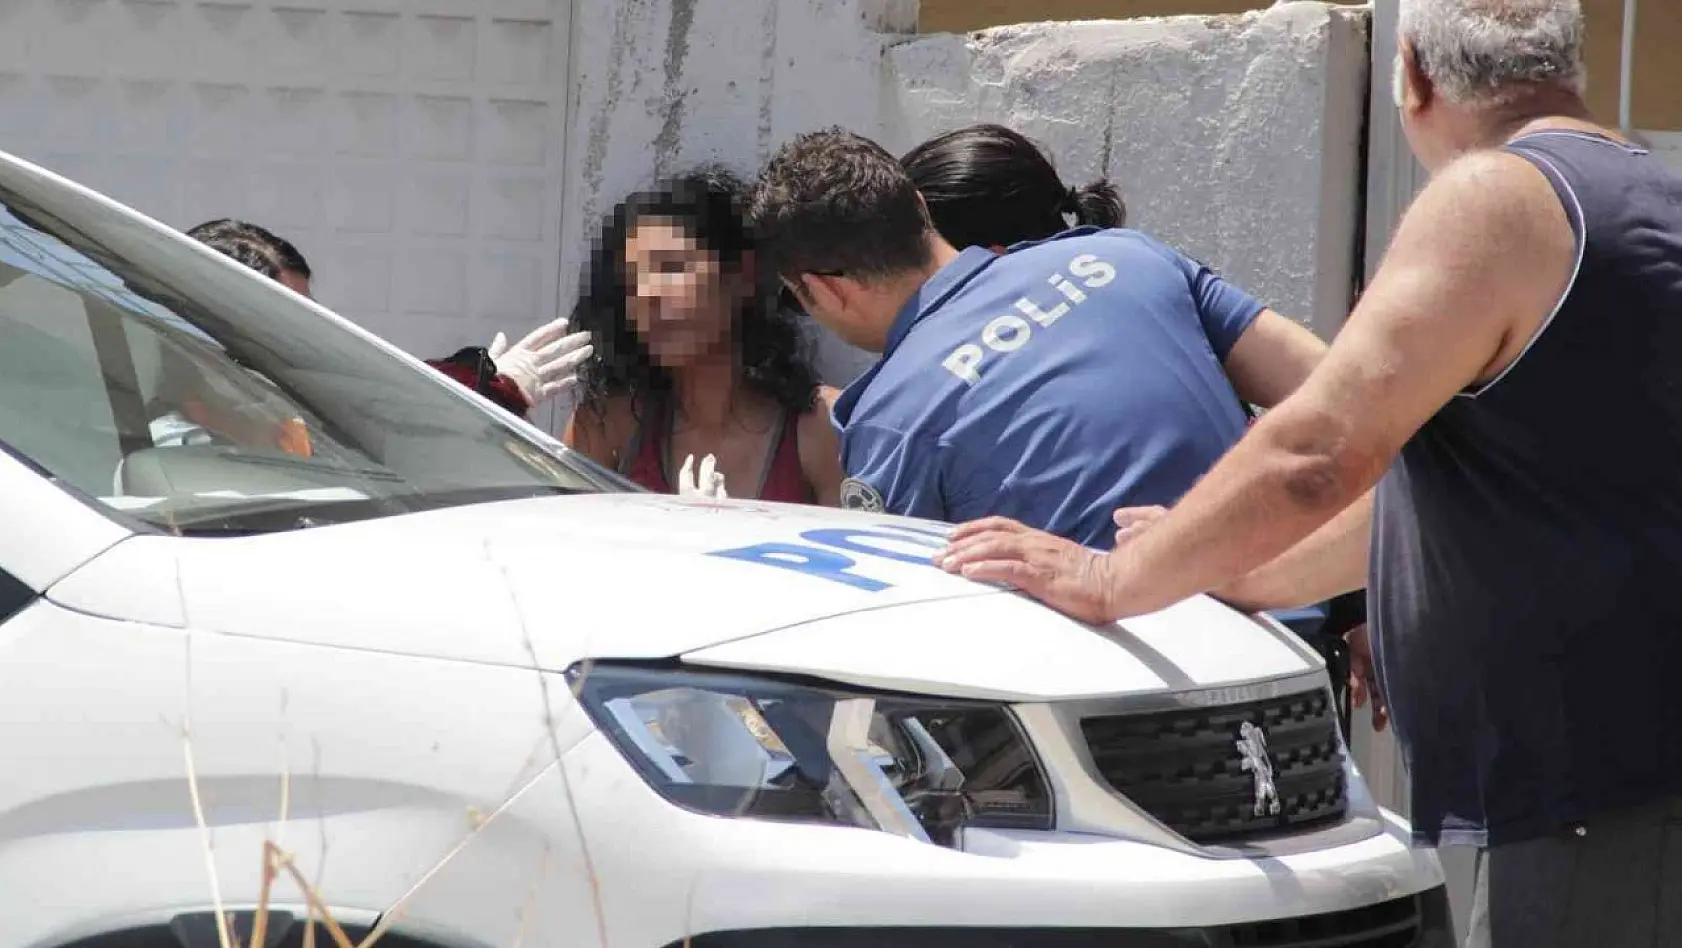 İzmir'de kocası tarafından bıçakla rehin alınan kadın kurtarıldı